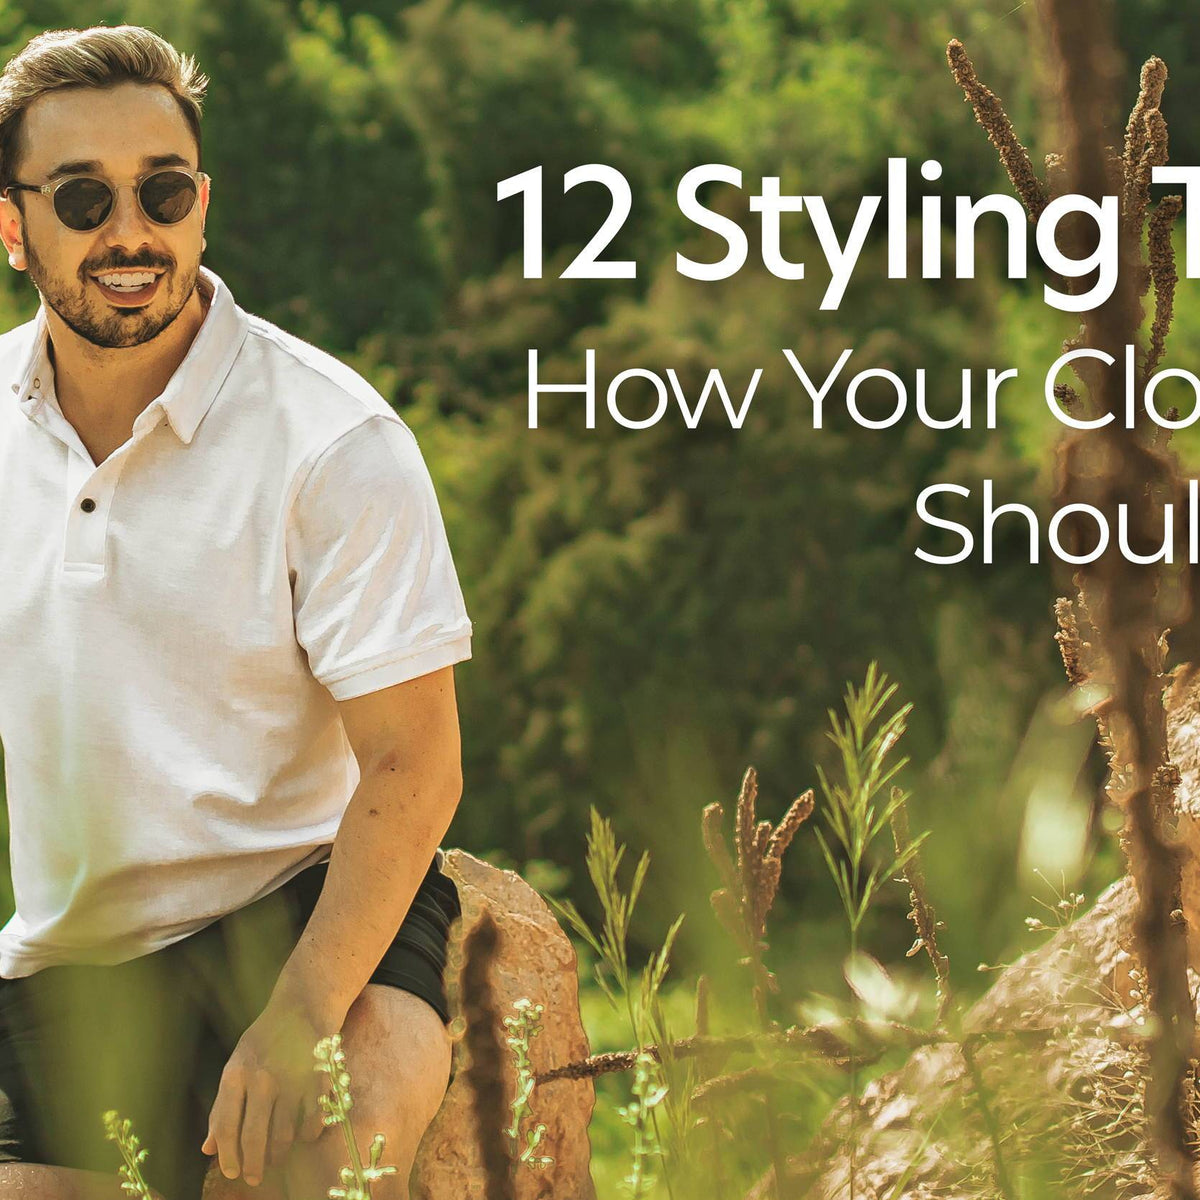 10 Style Tips For Shorter Men (What Looks Good On Short Guys